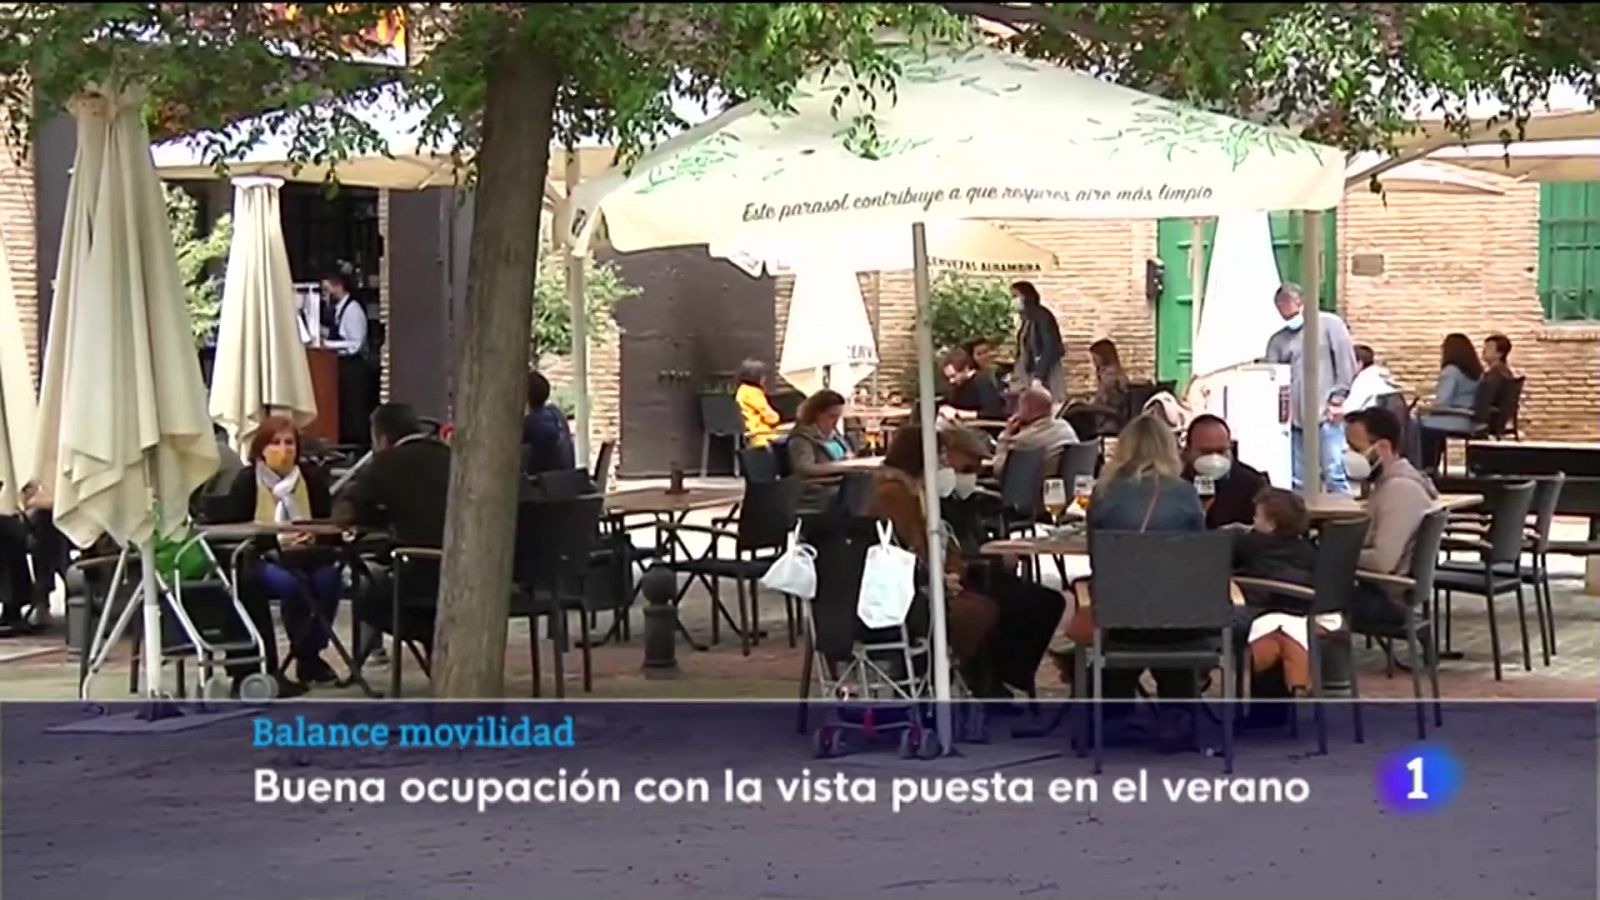 La vuelta a la movilidad interprovincial en Andalucía, positiva para el sector turístico y hostelero